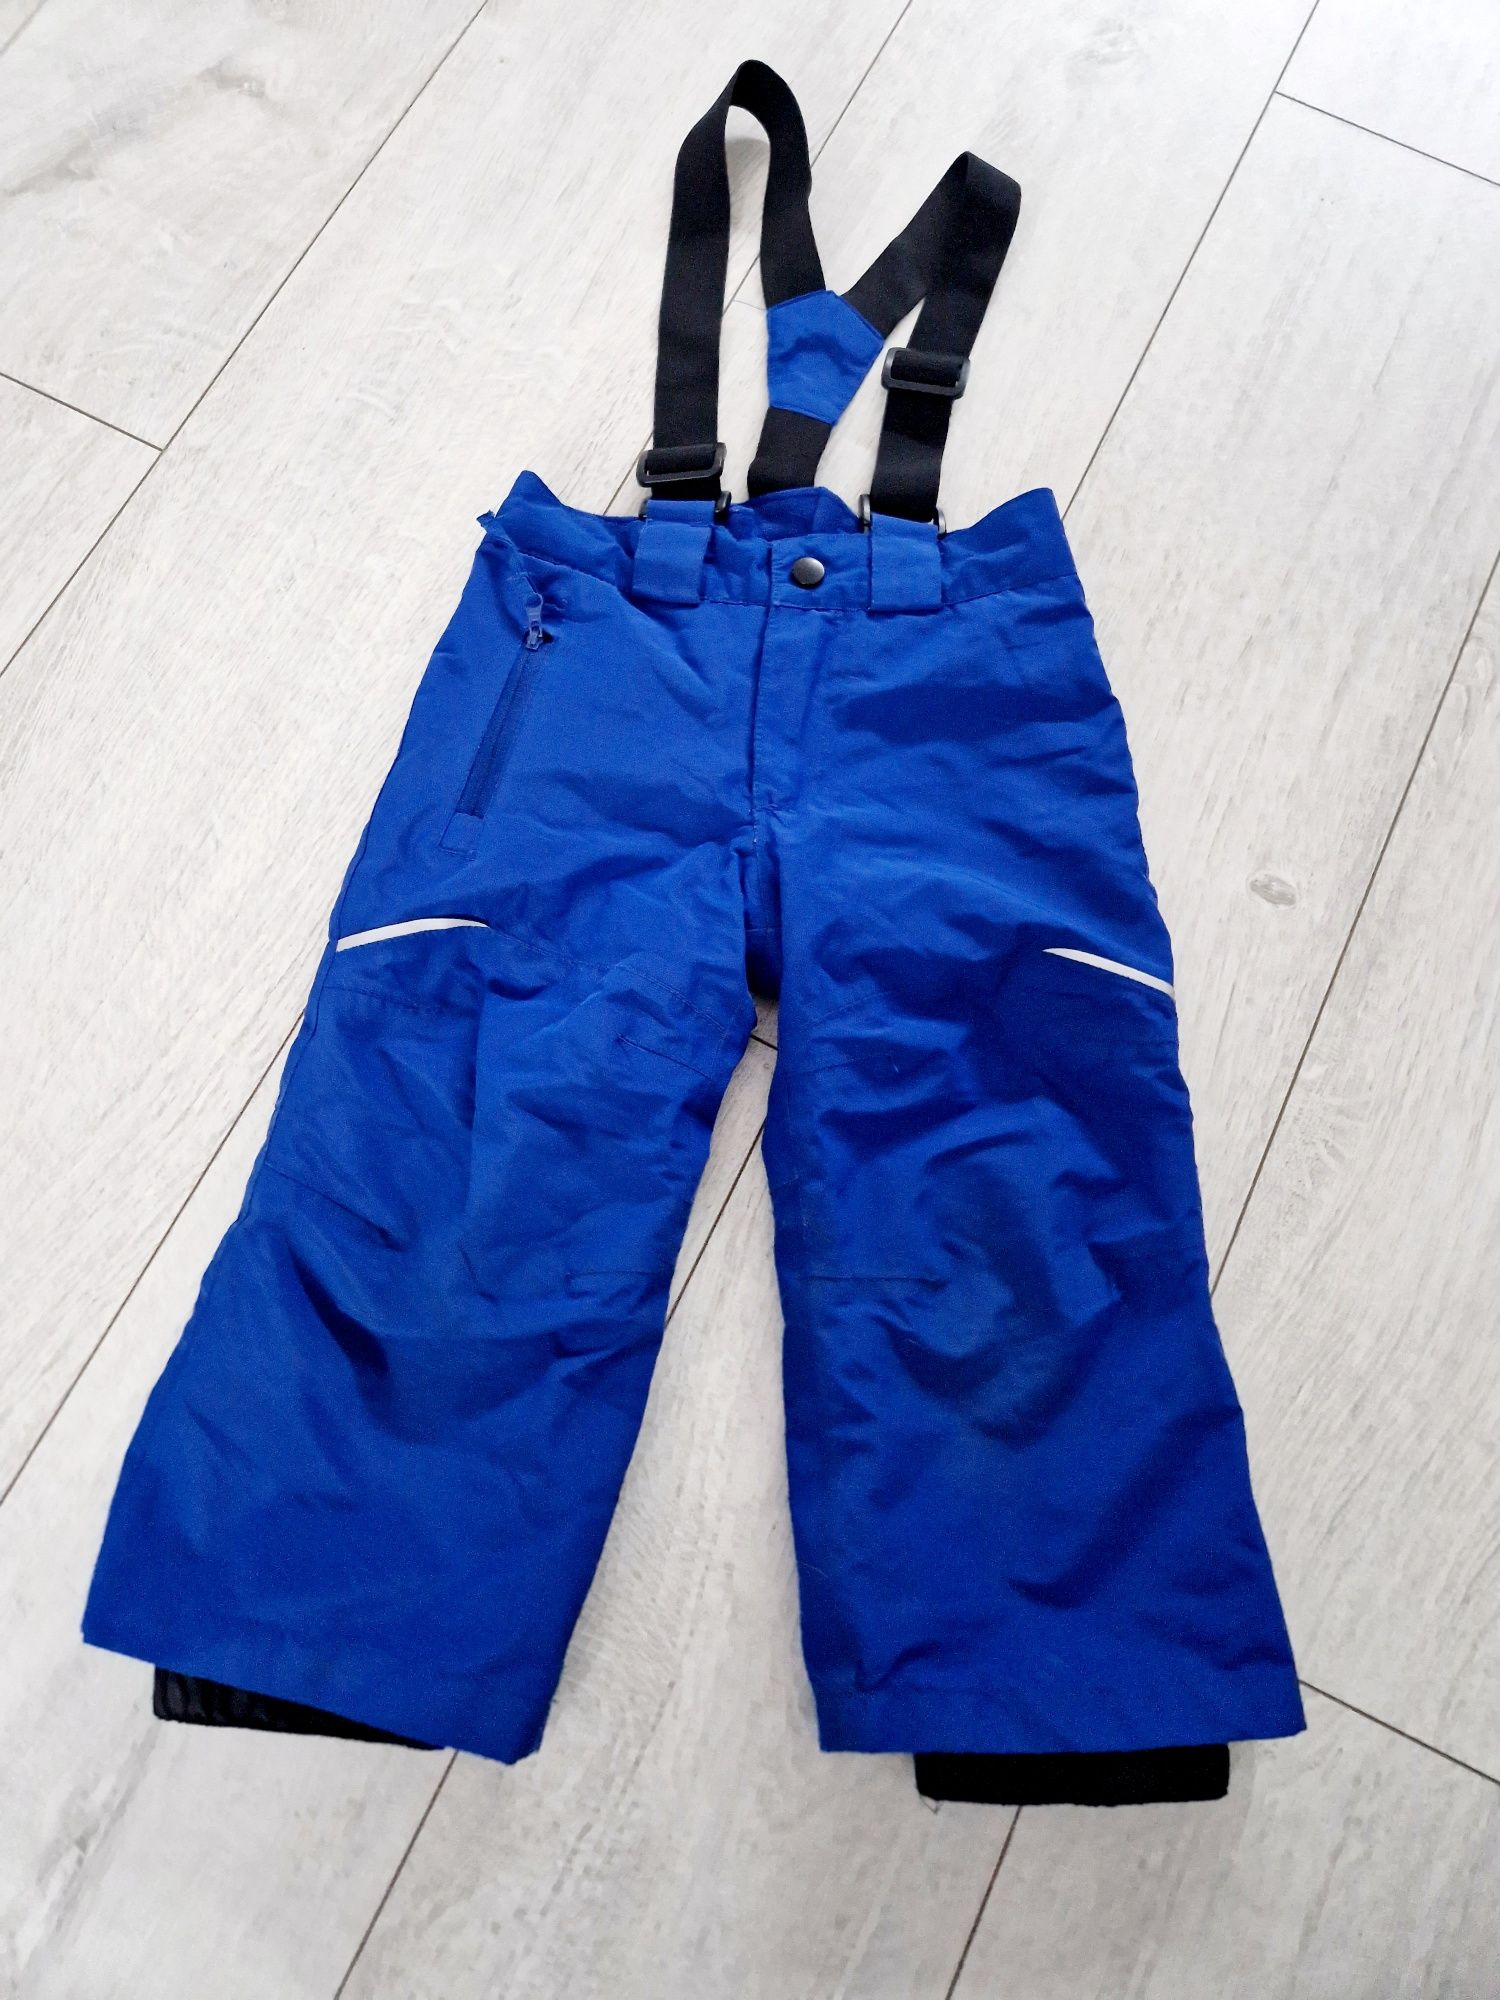 Spodnie dla chłopca narciarskie roz 86/92 Lupilu